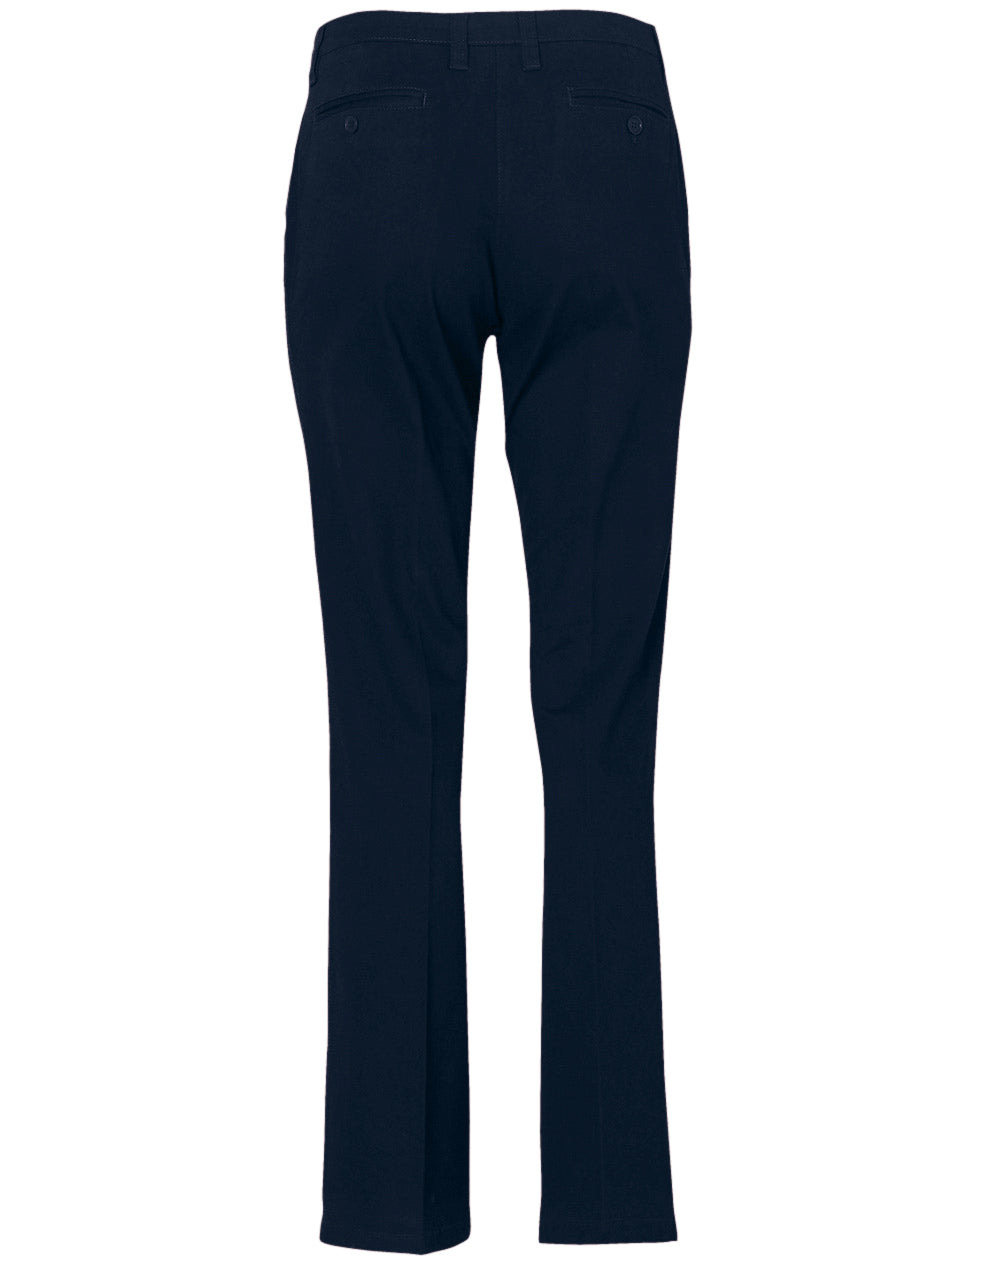 M9460 - Women's Chino Pants